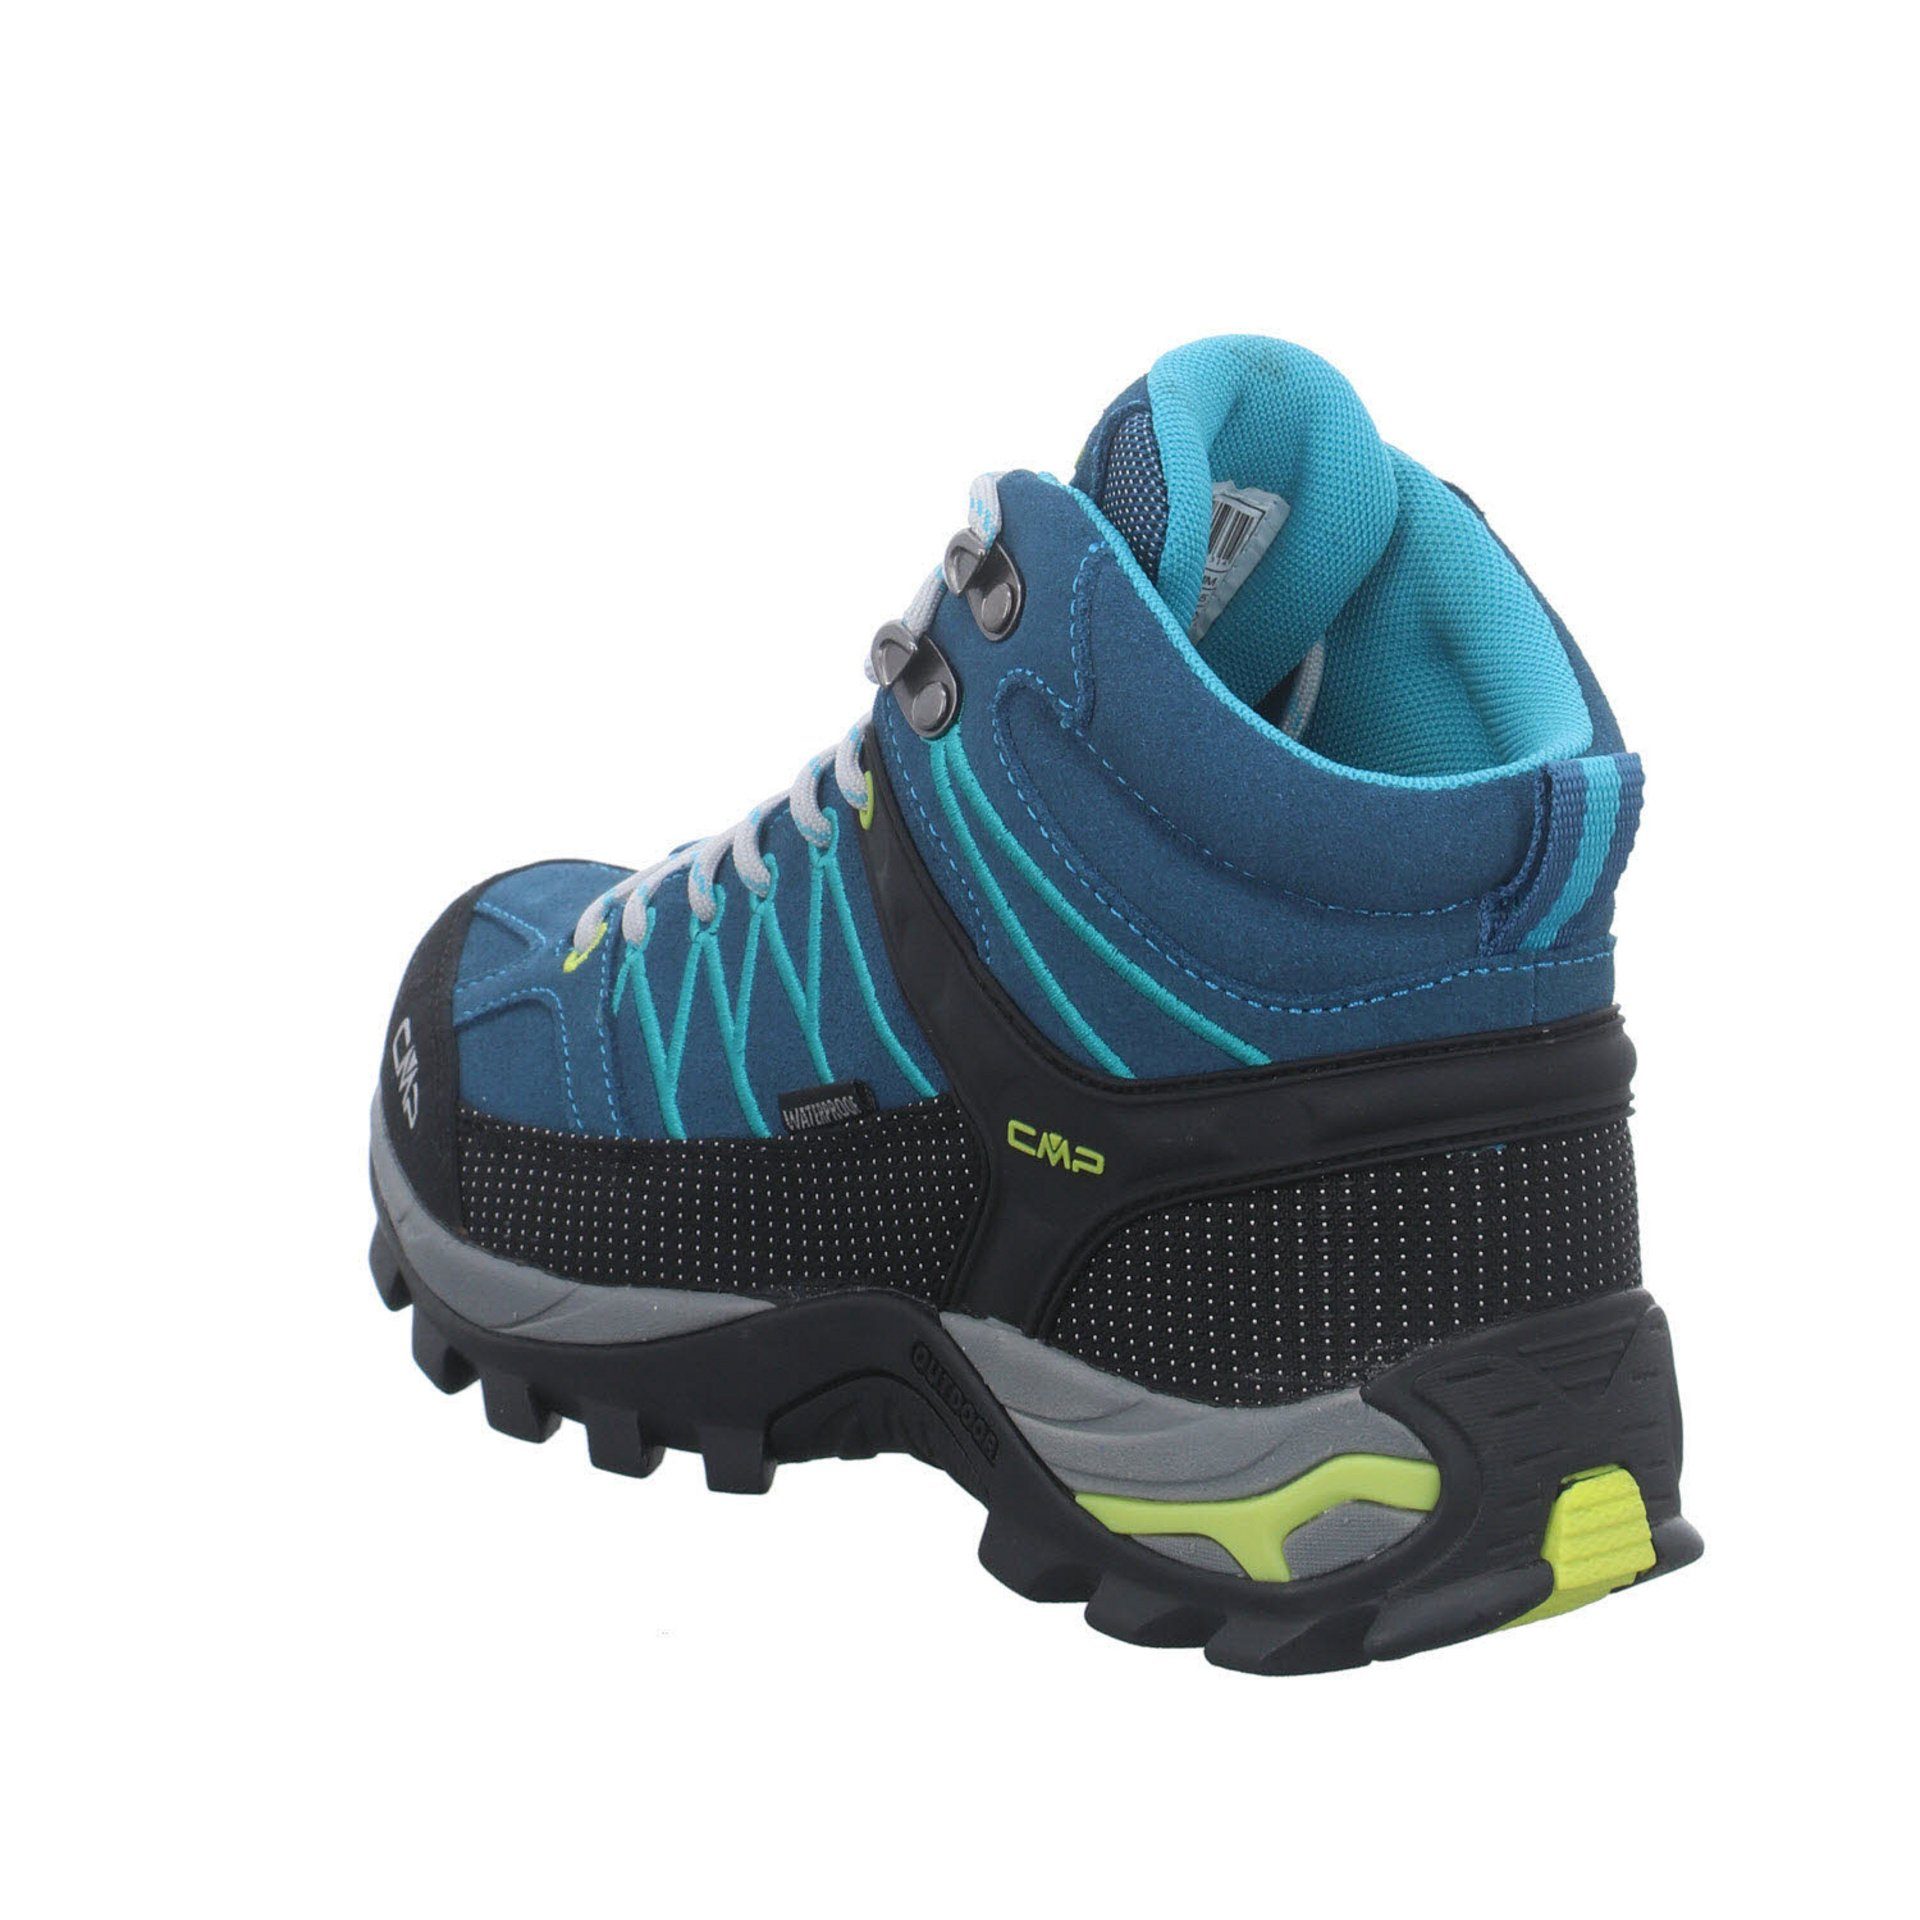 Schuhe Damen Leder-/Textilkombination DEEP Outdoorschuh Outdoorschuh Outdoor LAKE-BALTIC CMP Rigel Mid